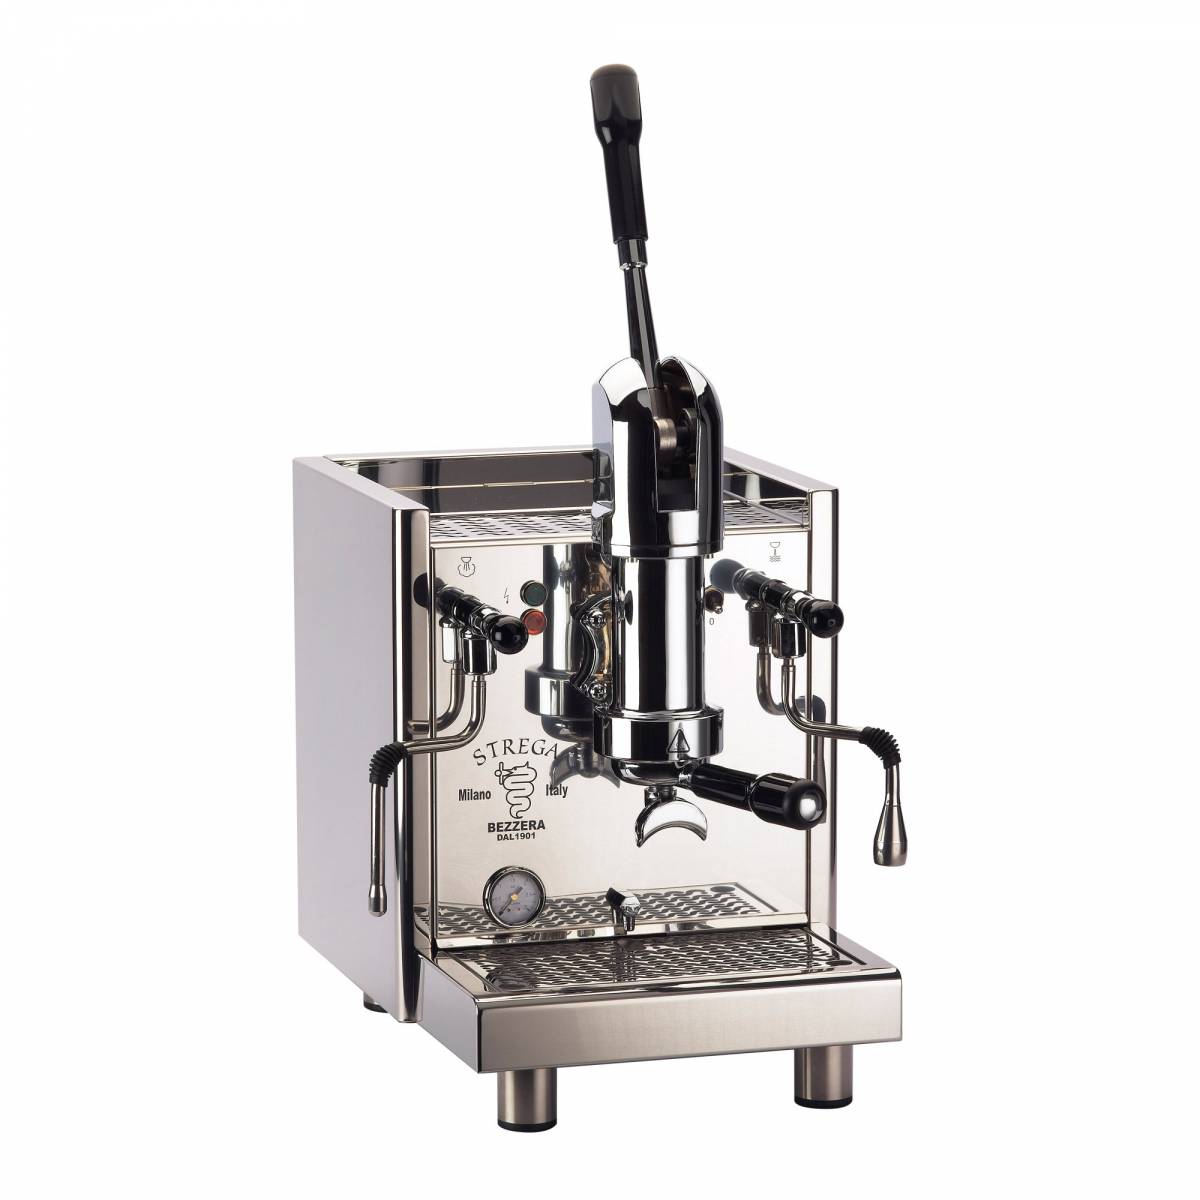 191040円 買得 エスプレッソマシン レバー式 Bezzera Strega Lever Espresso Machine 家電